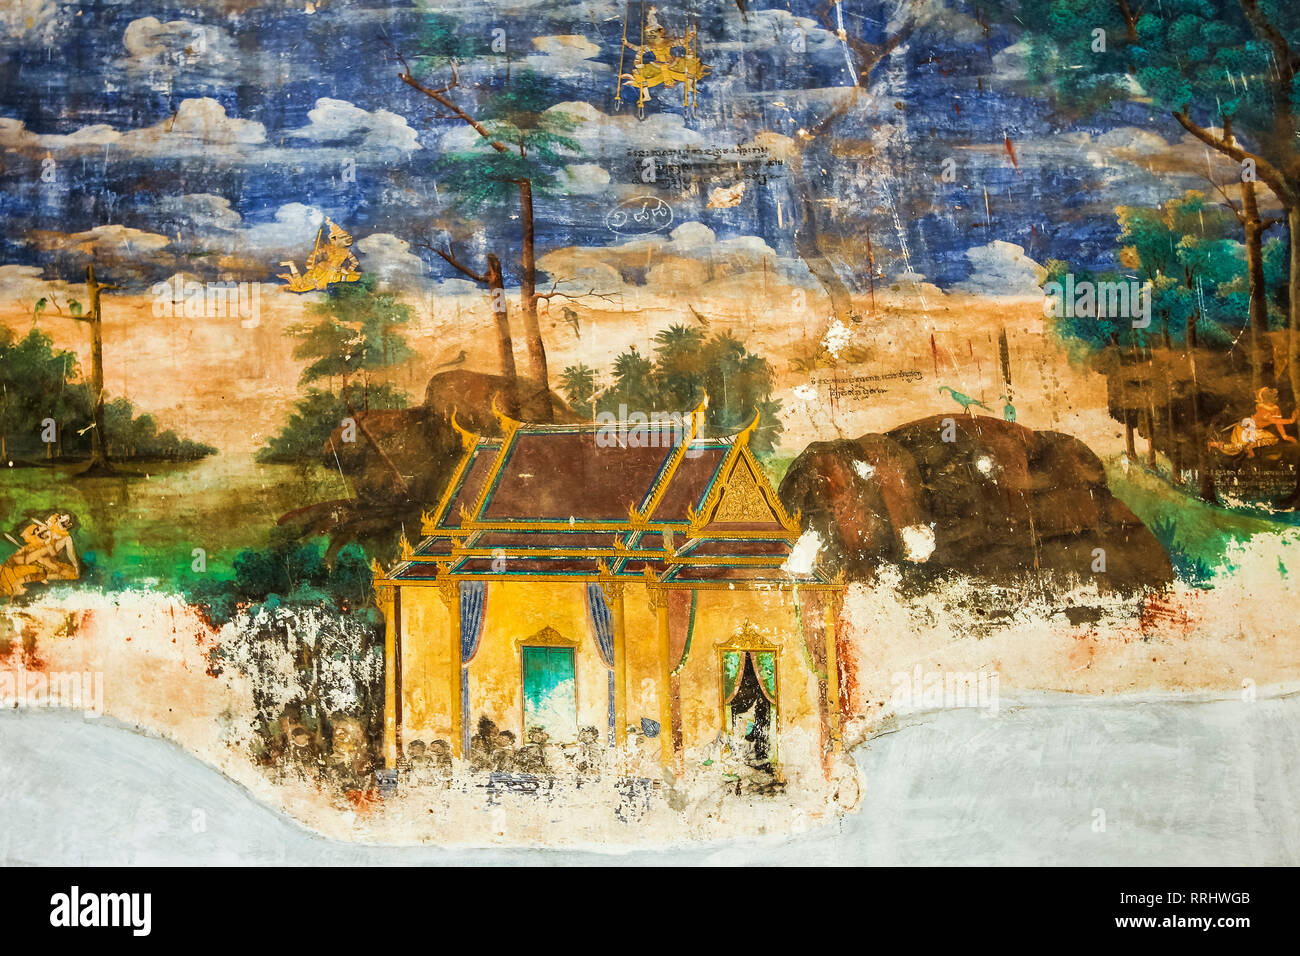 Fresque du Reamker, la version khmère du Ramayana poème épique, Palais Royal cloîtres, Palais Royal, Phnom Penh, Cambodge, Indochine Banque D'Images